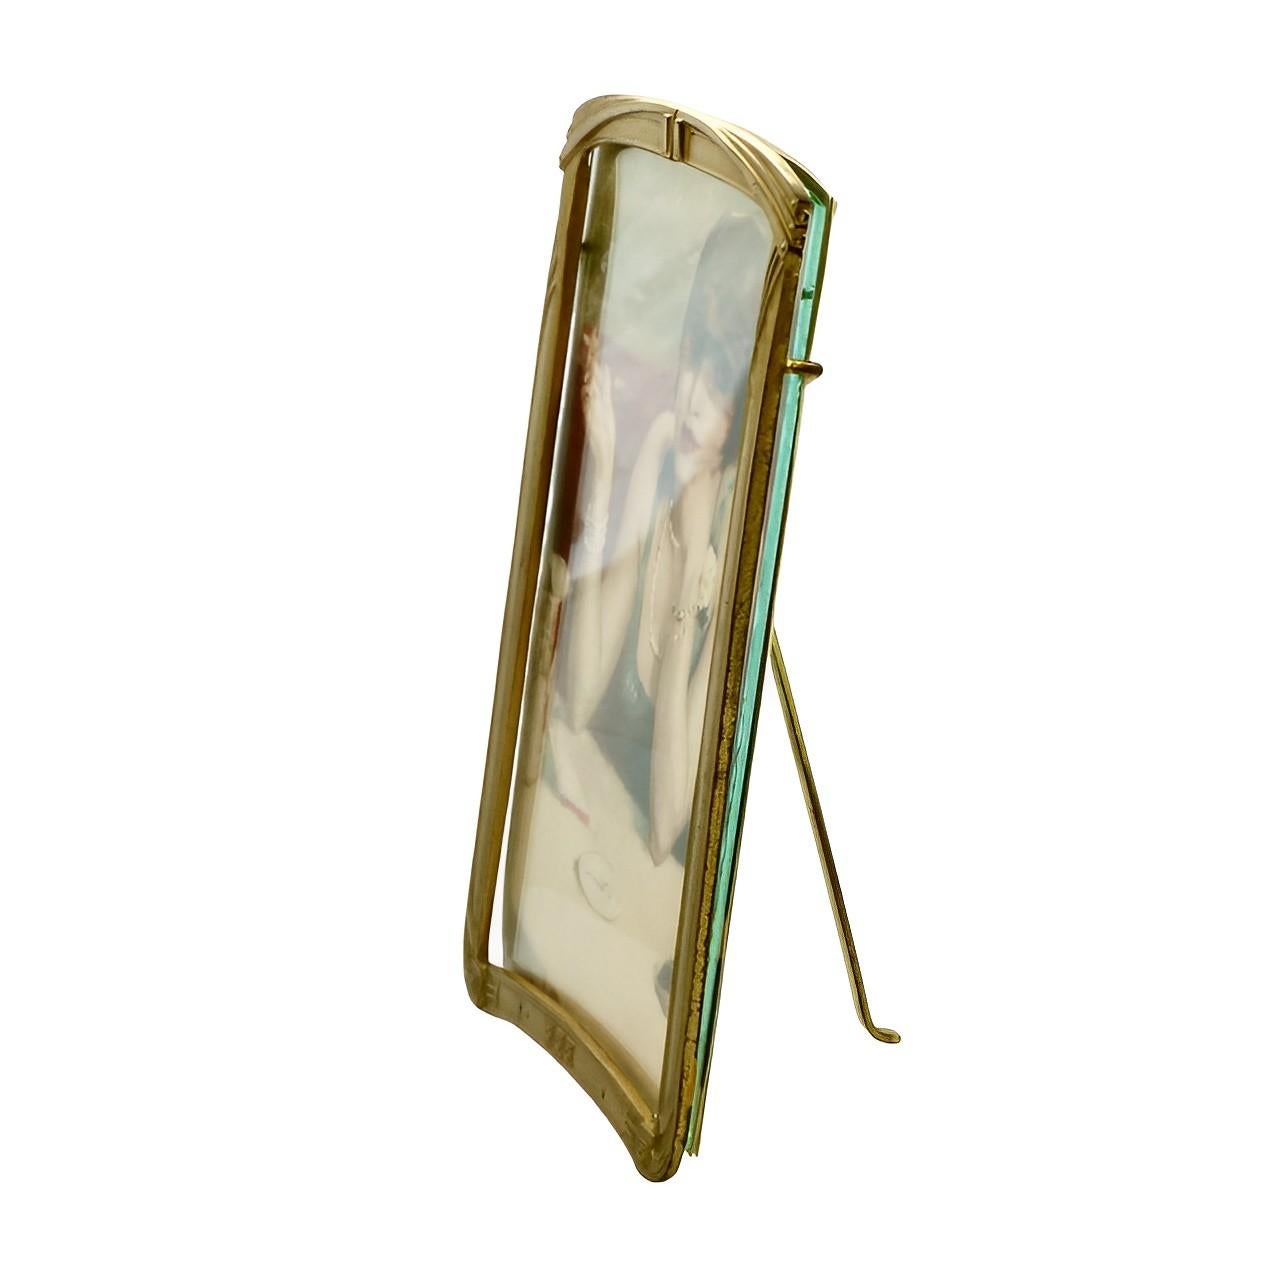 Hübscher, vergoldeter Art-Déco-Bilderrahmen aus Metall in klassischem Design, mit Glaseinsatz und dem Bild eines Flappers. Der Rahmen hat einen Metallträger, der gut funktioniert.

Es misst 12,1 cm in der Breite, 17,6 cm in der Höhe und 5 mm in der